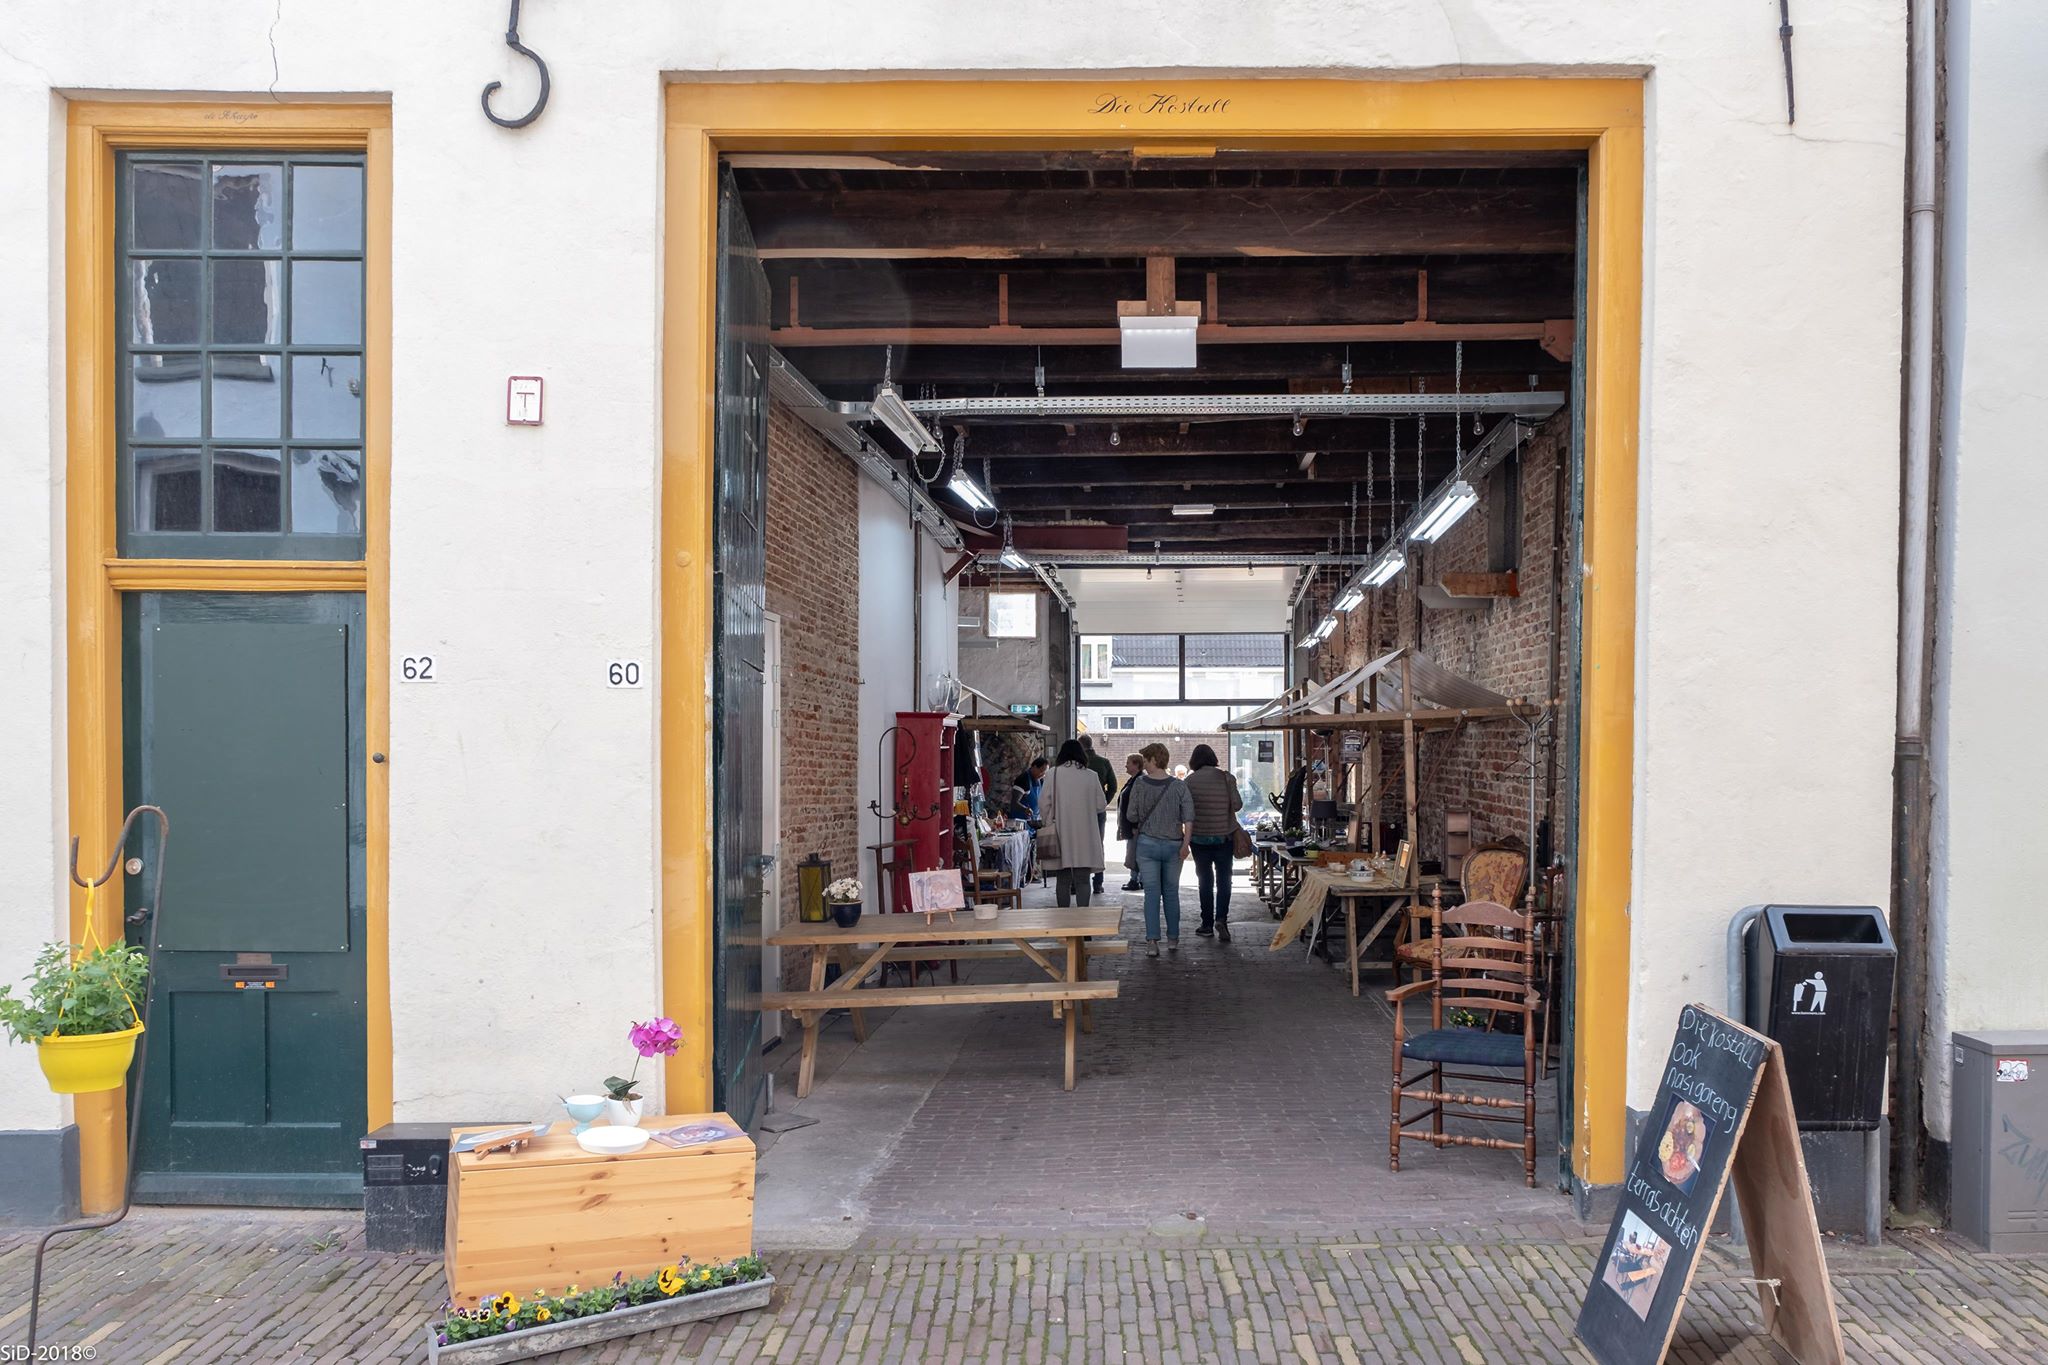 Die Kostall en meer winkels in Deventer vind je bij Shoppen in Deventer